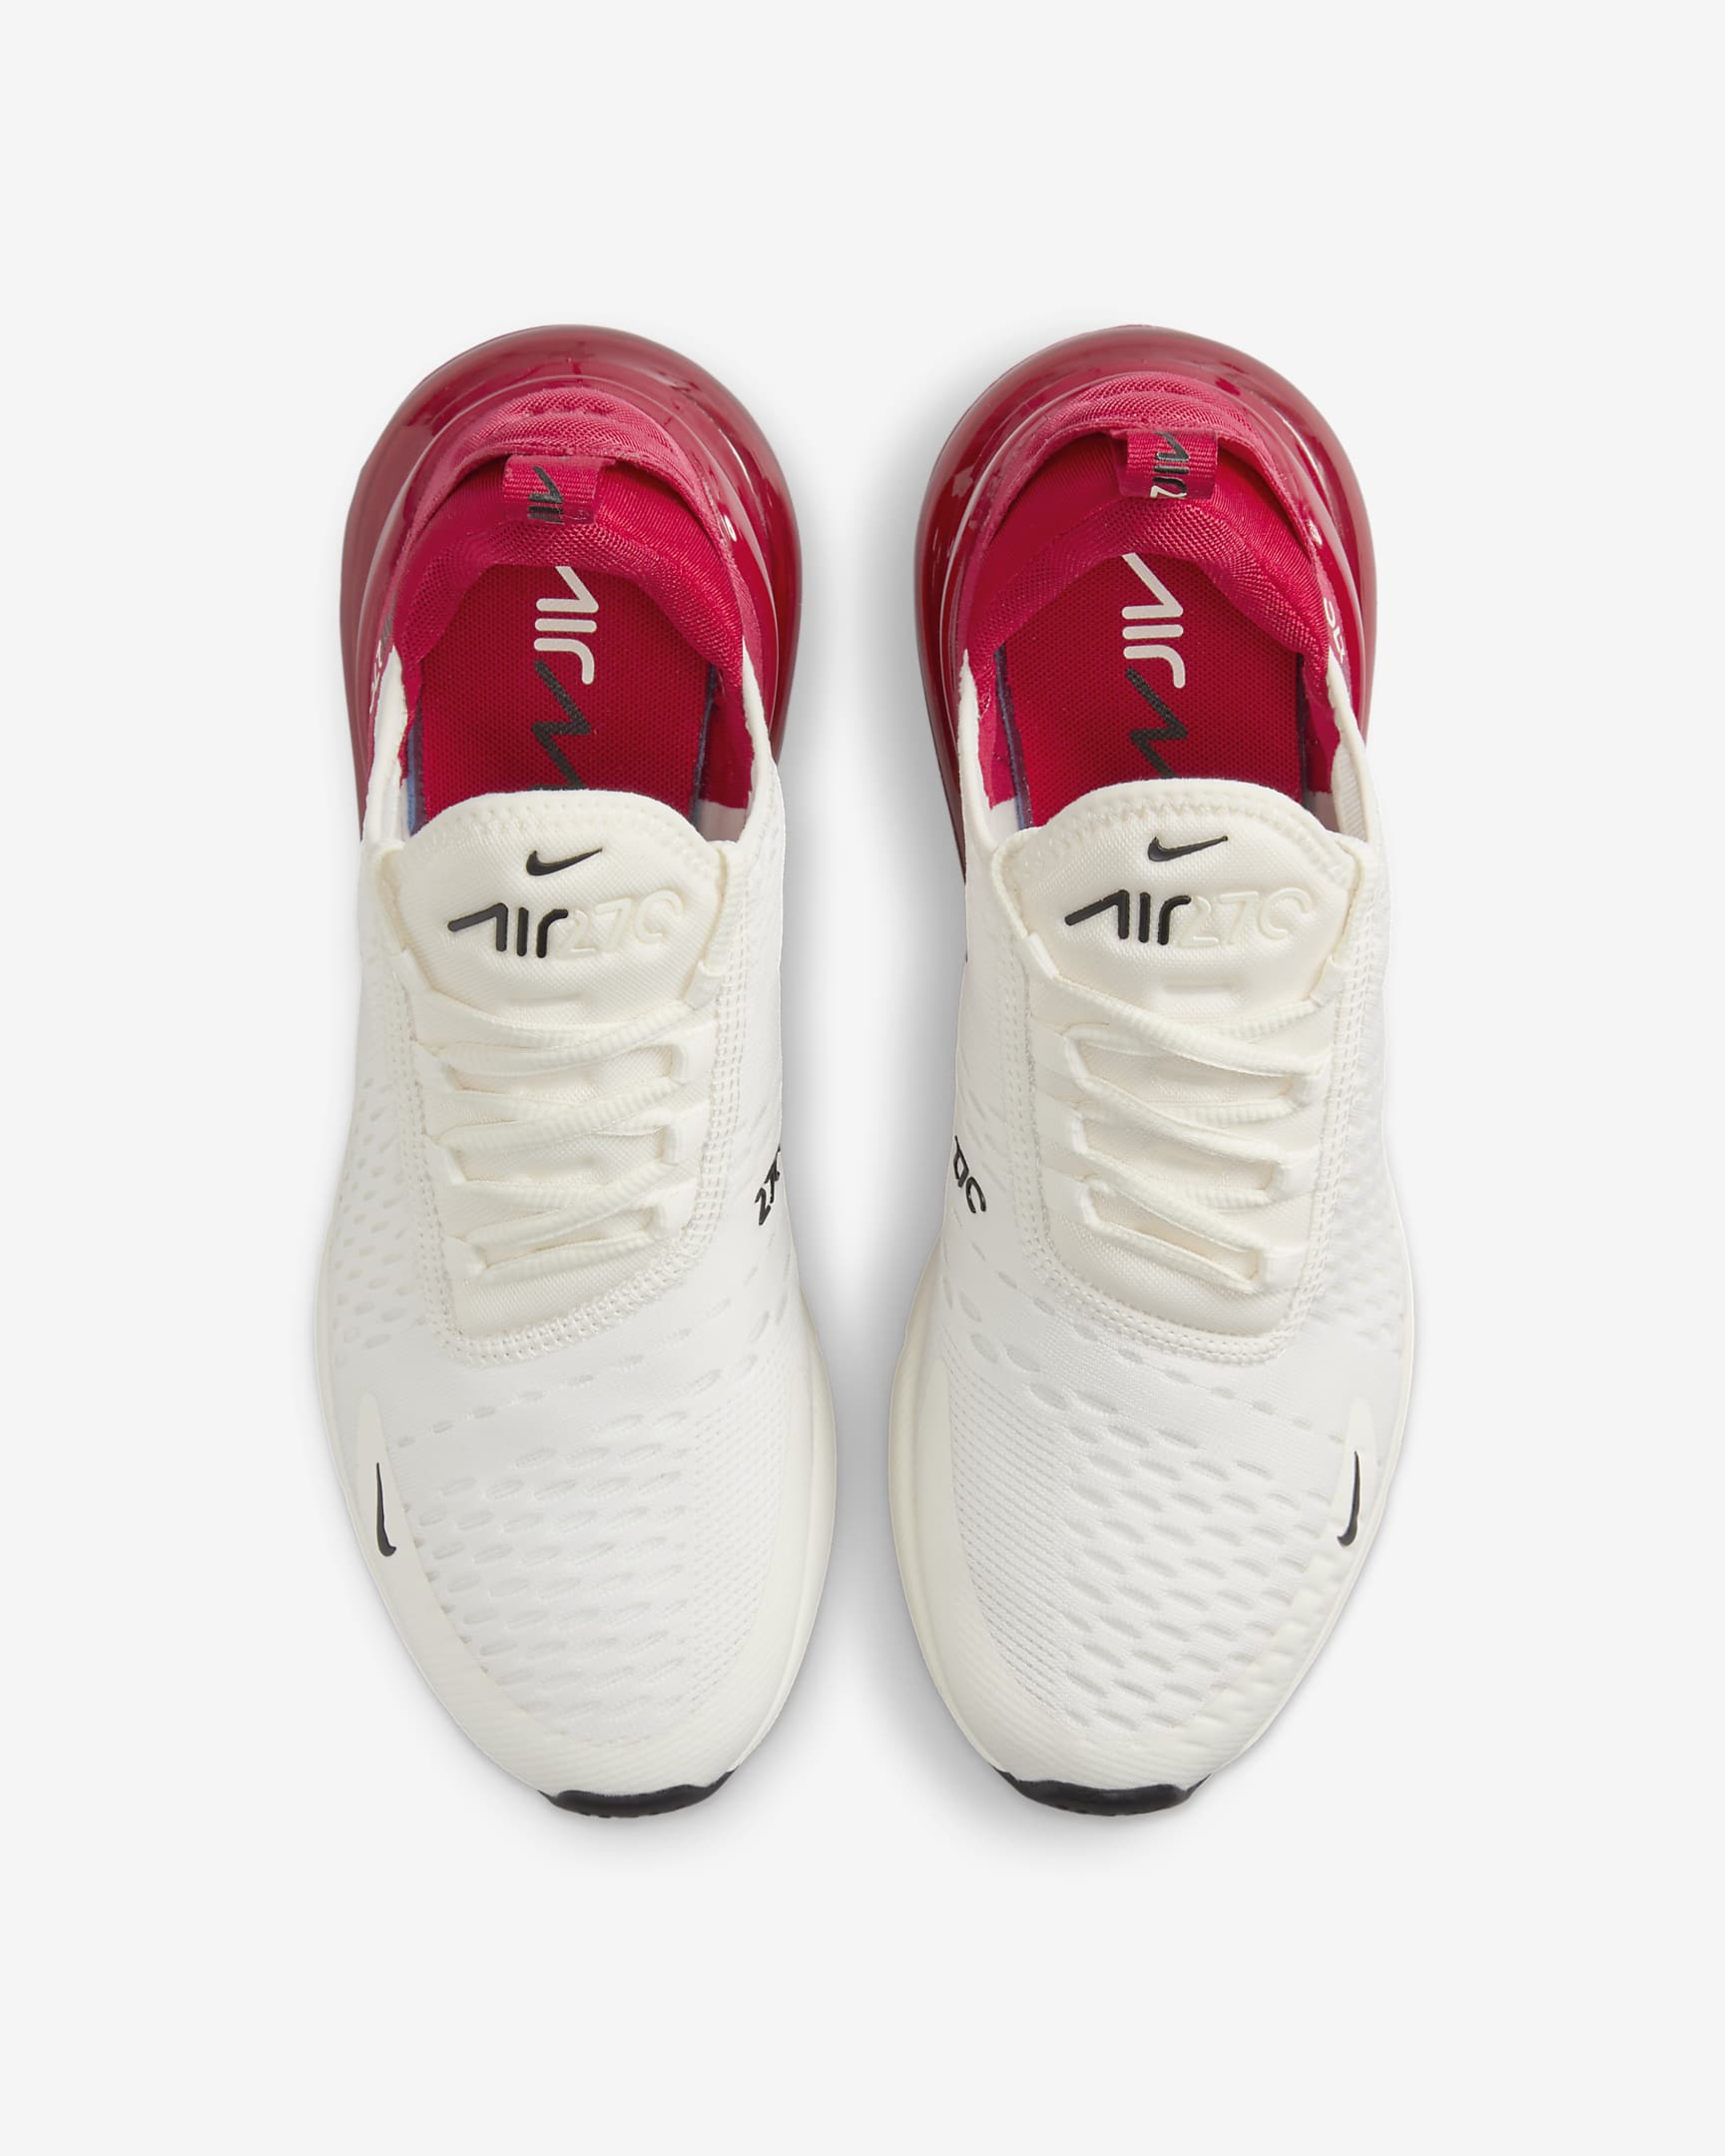 Chaussure Nike Air Max 270 pour femme - Gym Red/Noir/Sail